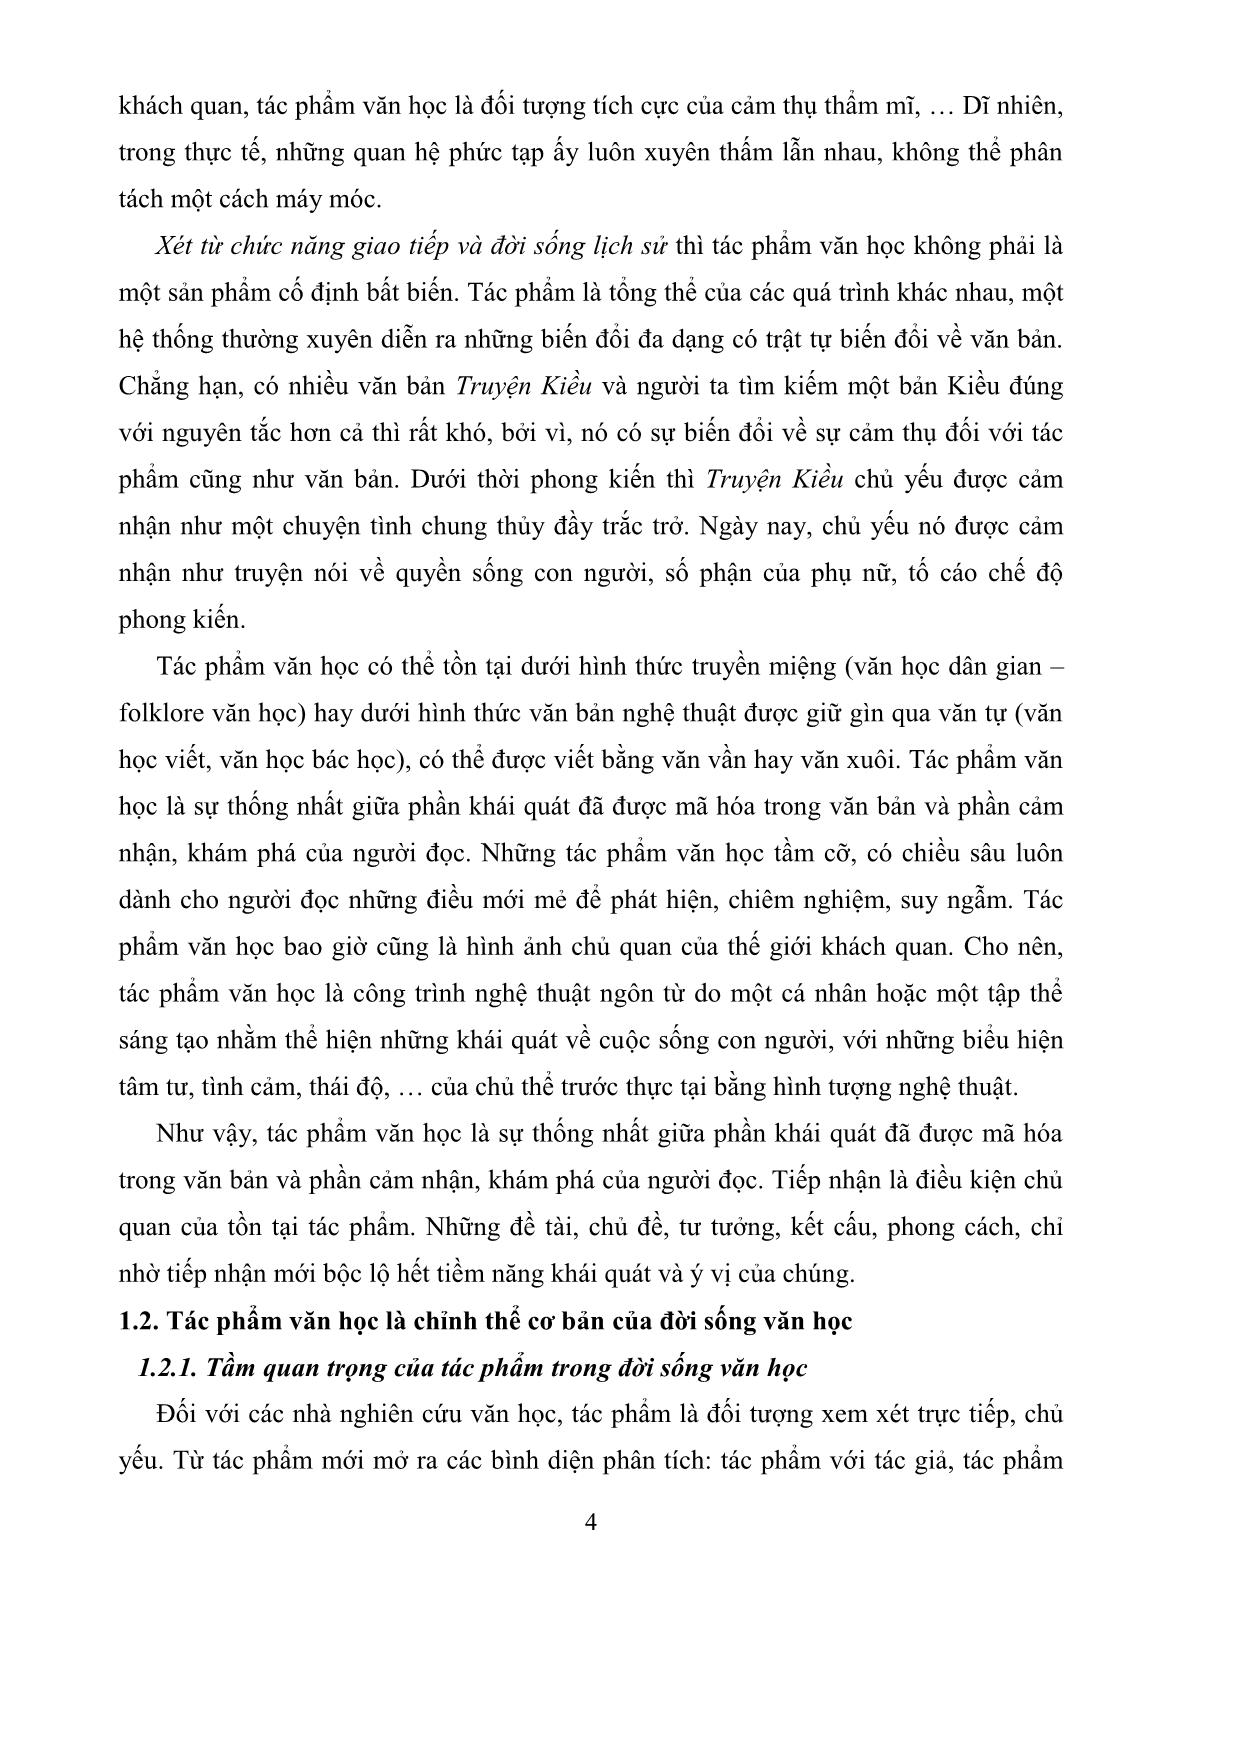 Giáo trình Lí Luận văn học 2 (Tác phẩm và loại thể văn học) trang 7